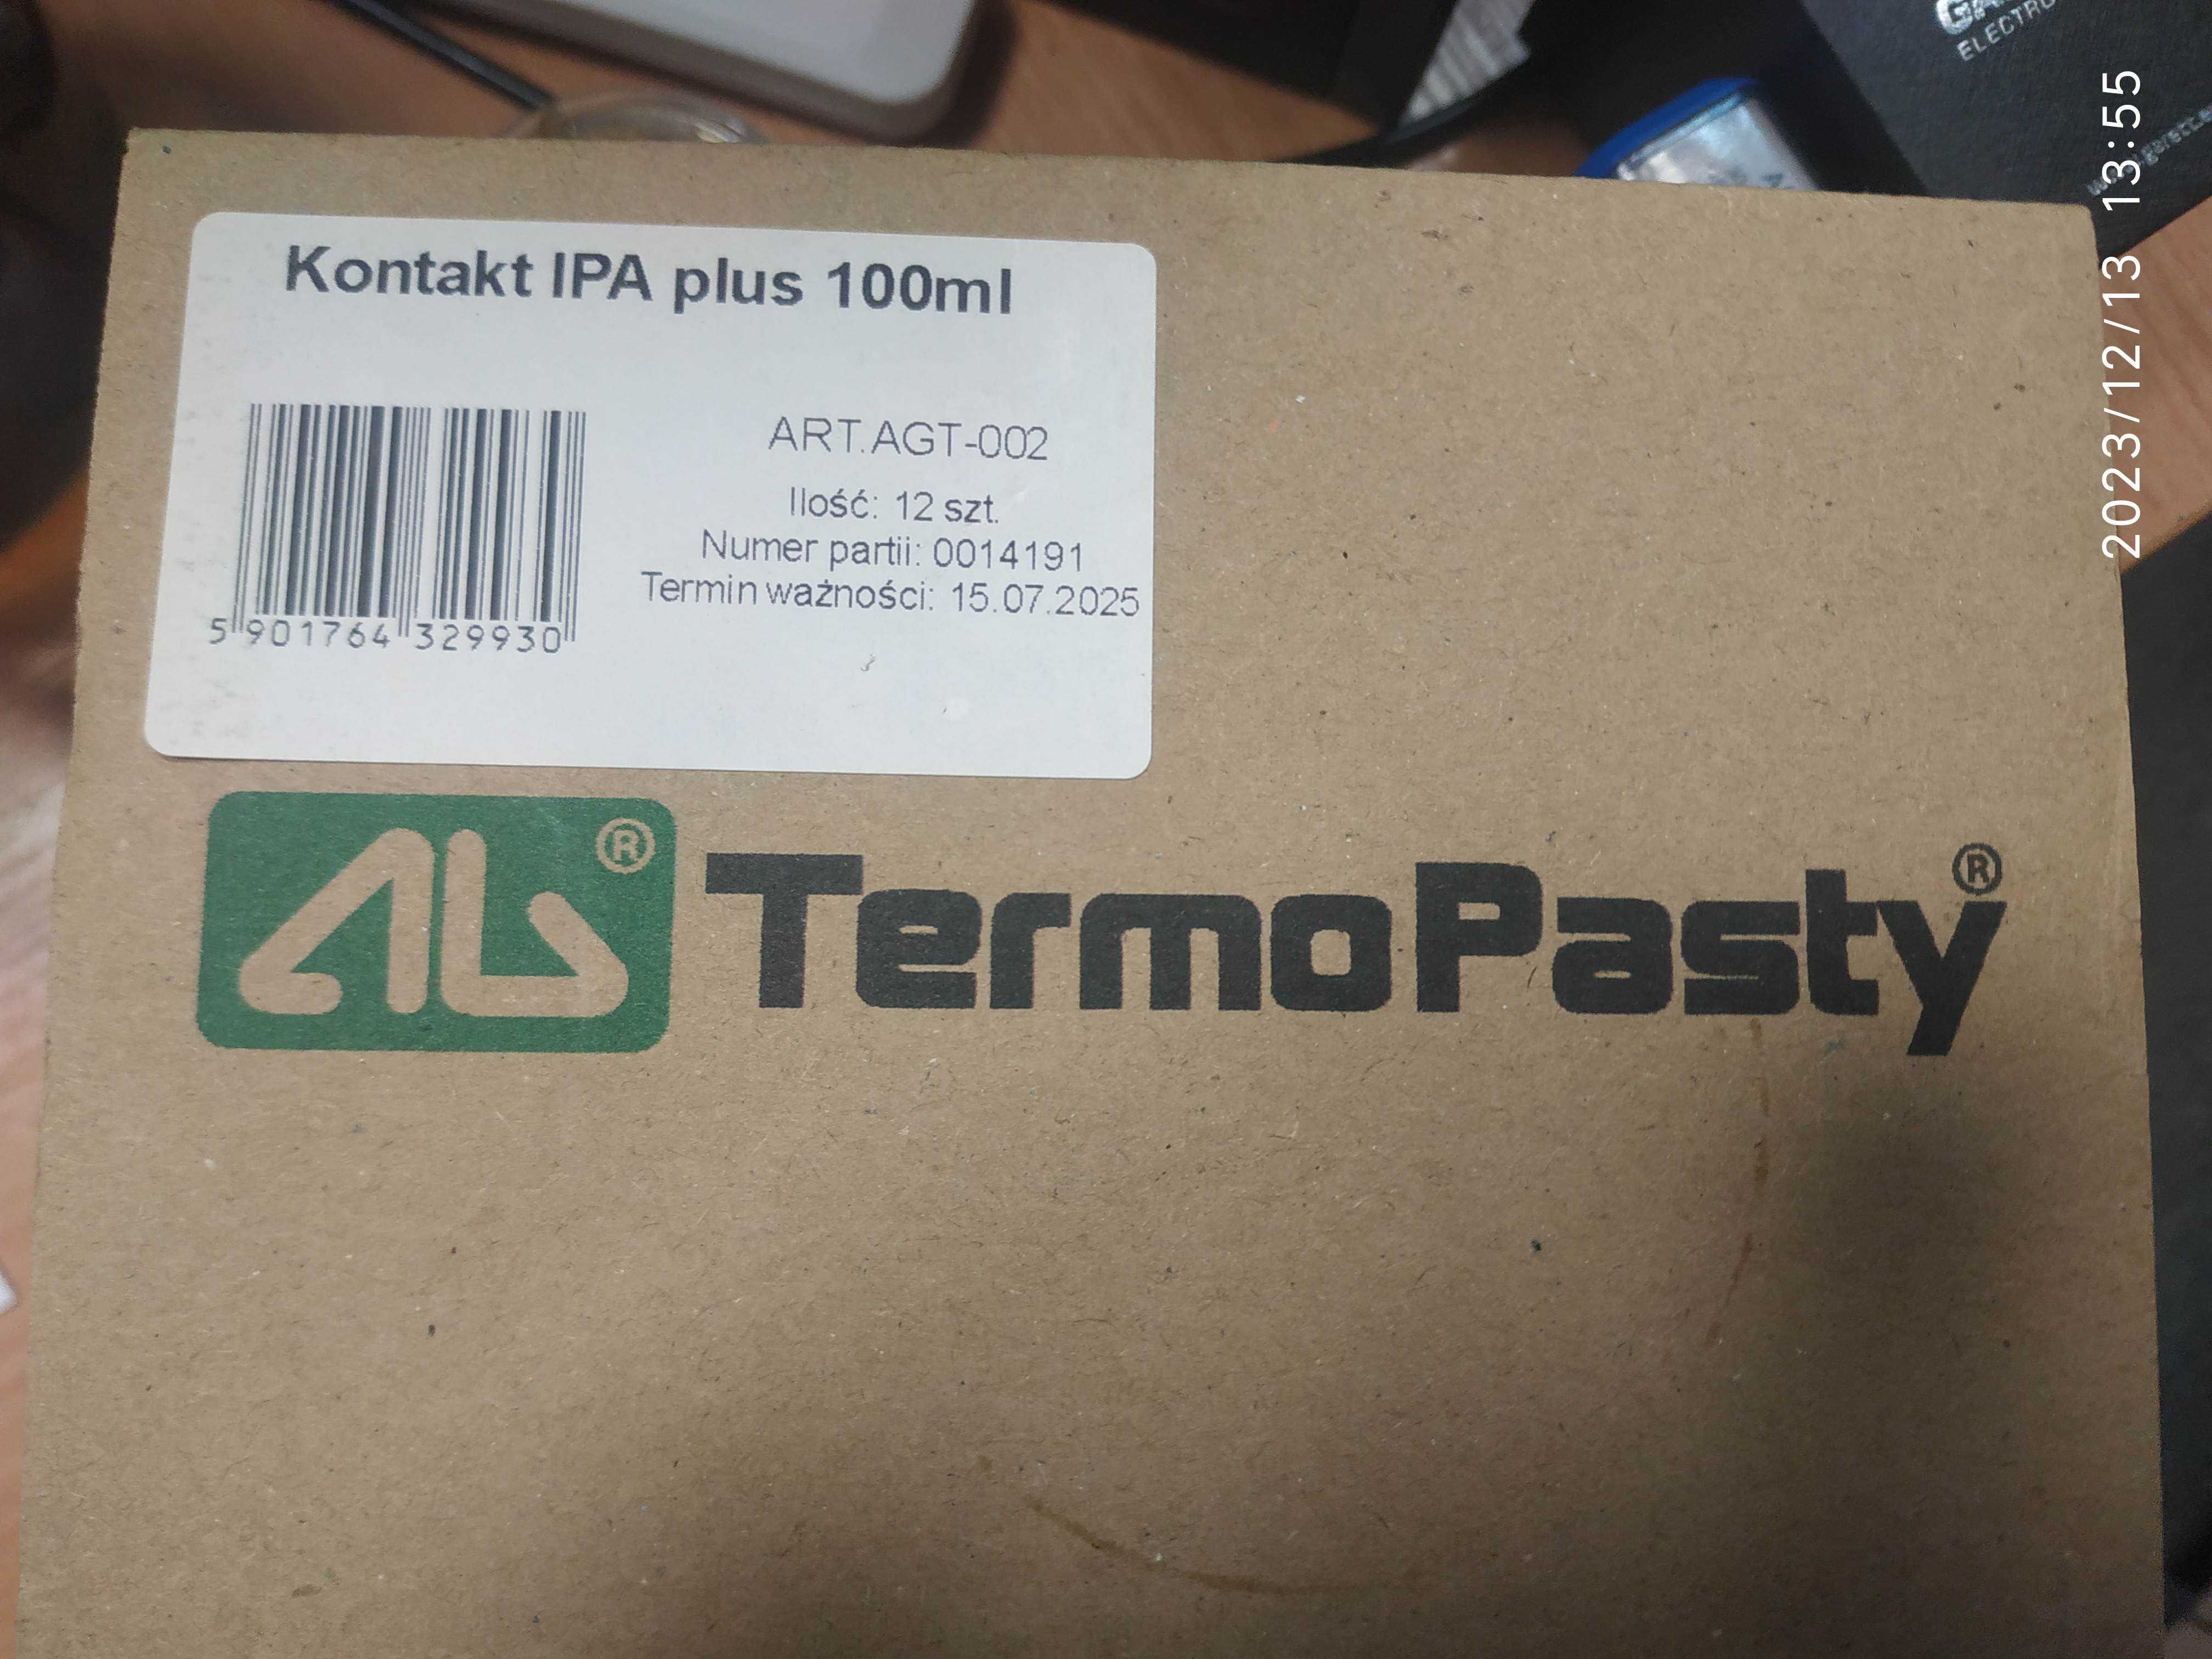 AG TermoPasty Kontakt IPA Plus alk. izopropylowy,100ml AGT-002, 12 szt